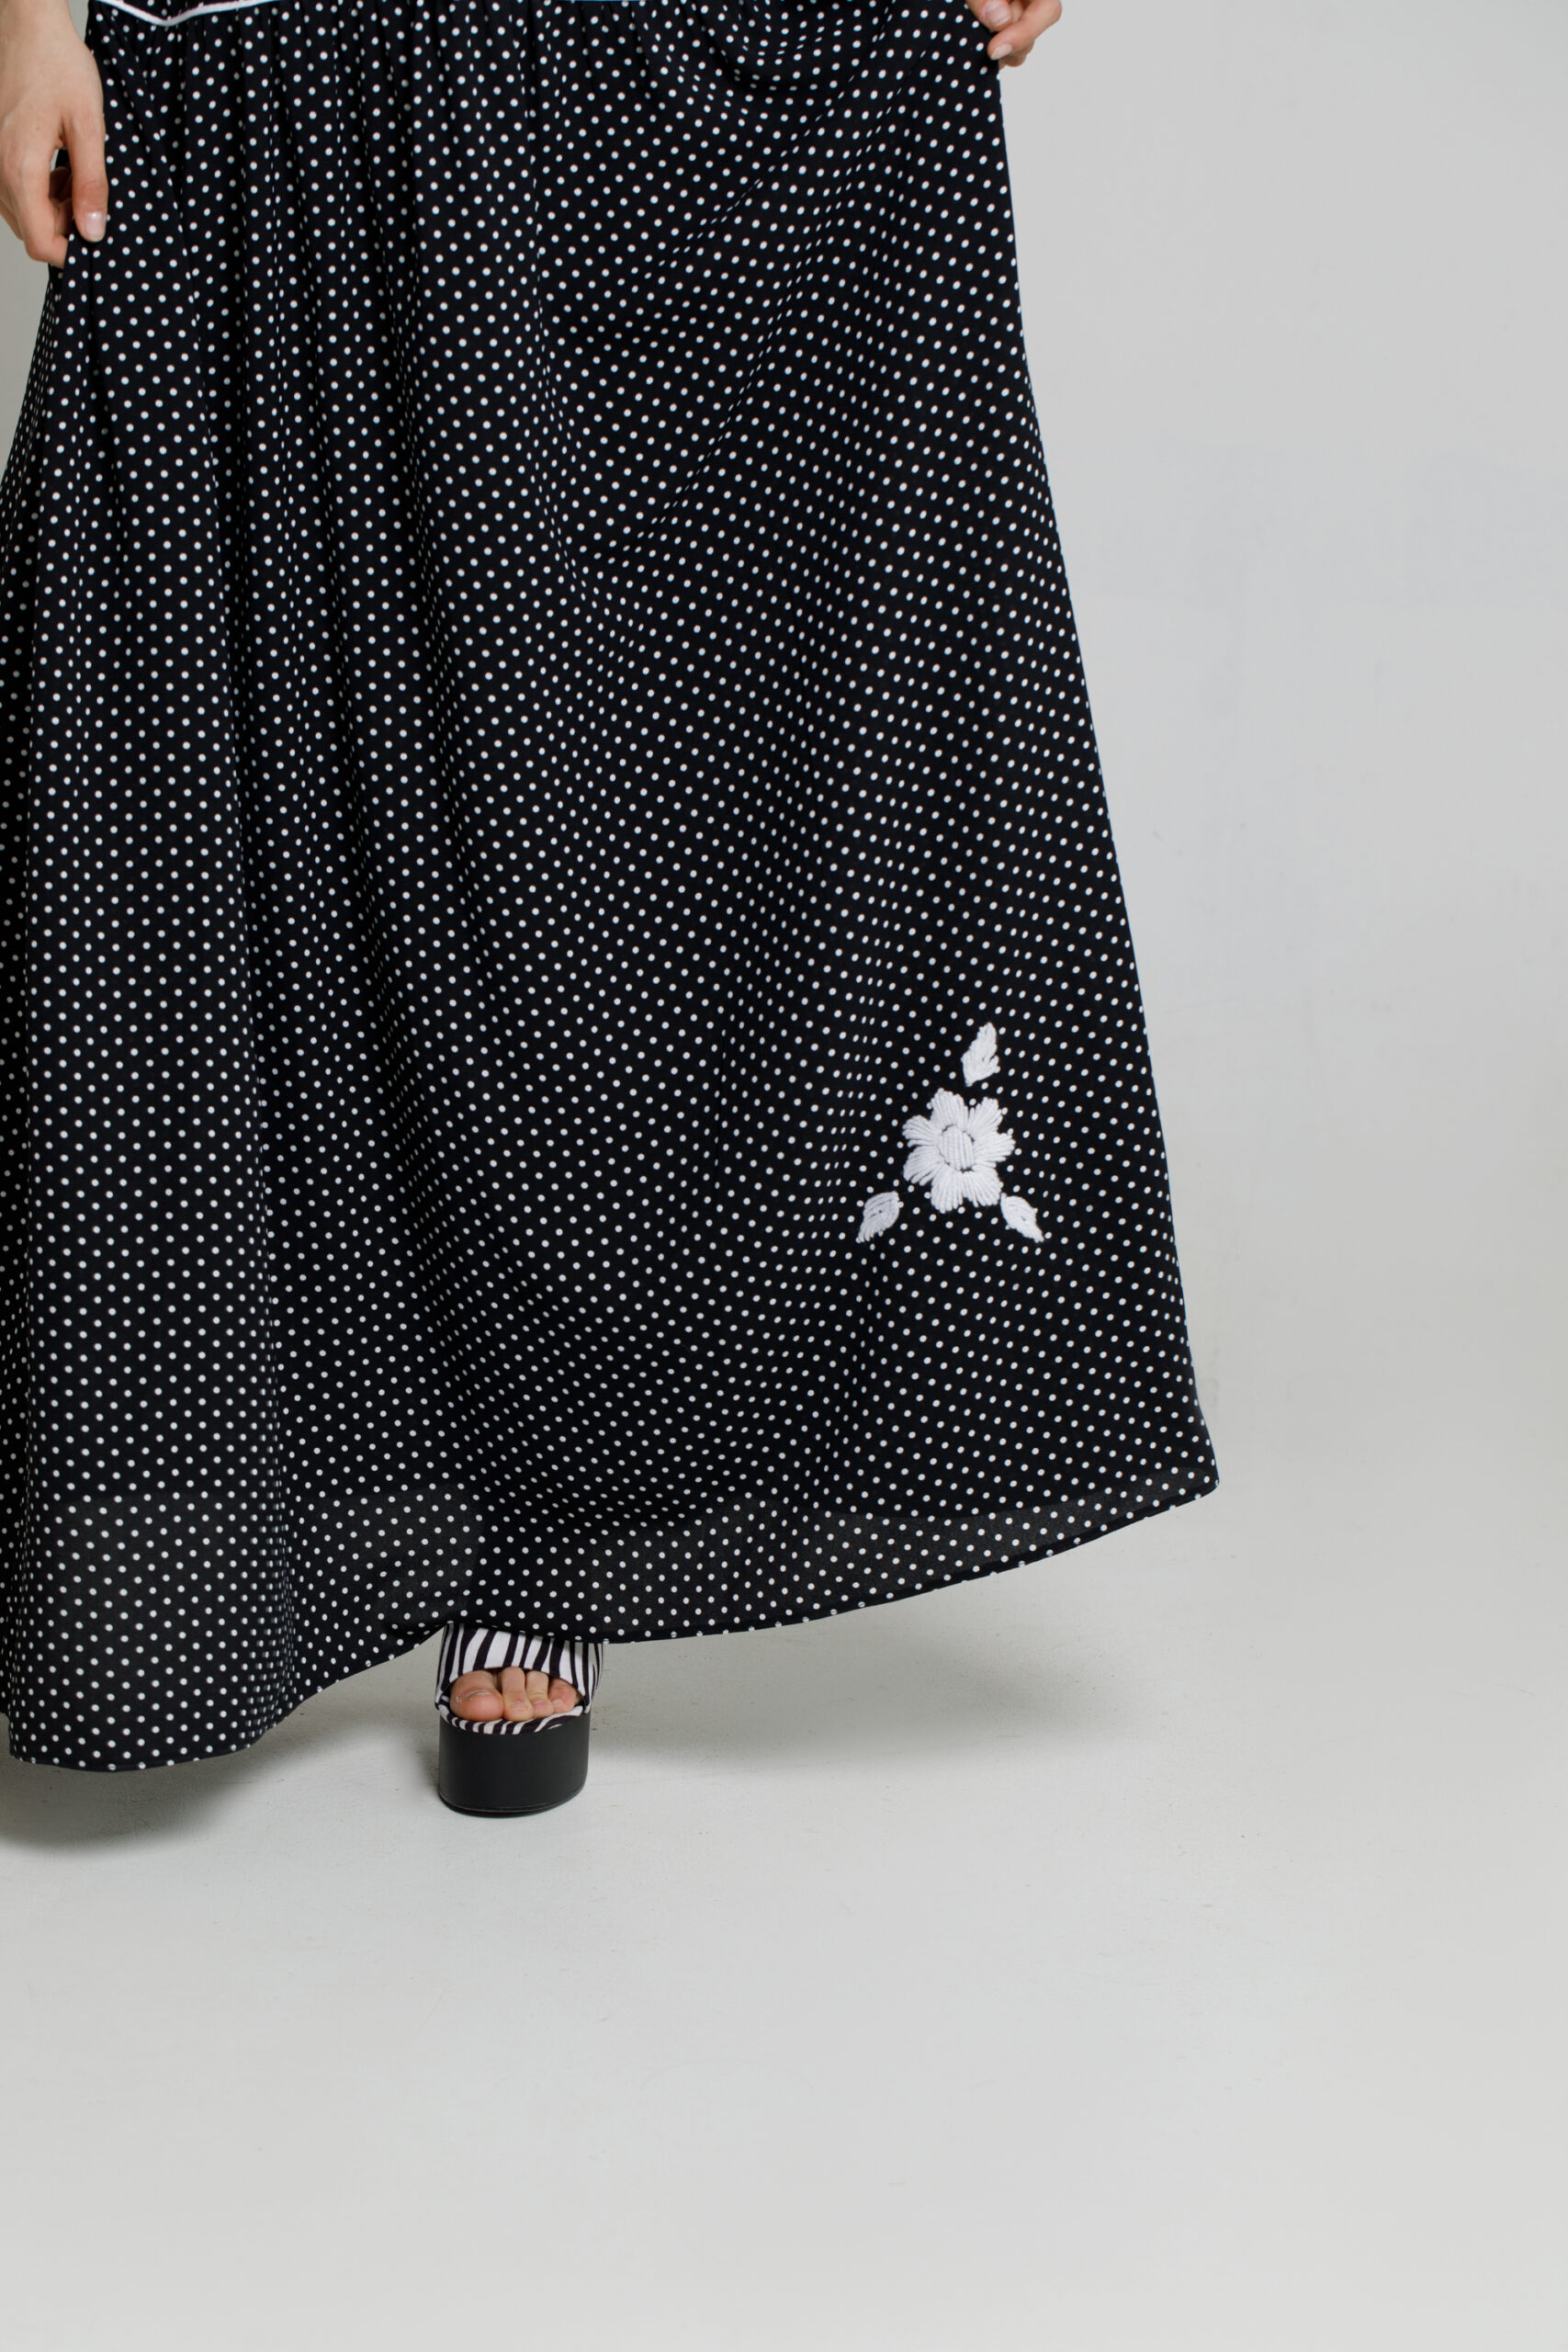 ARABELA long casual black viscose dress. Natural fabrics, original design, handmade embroidery